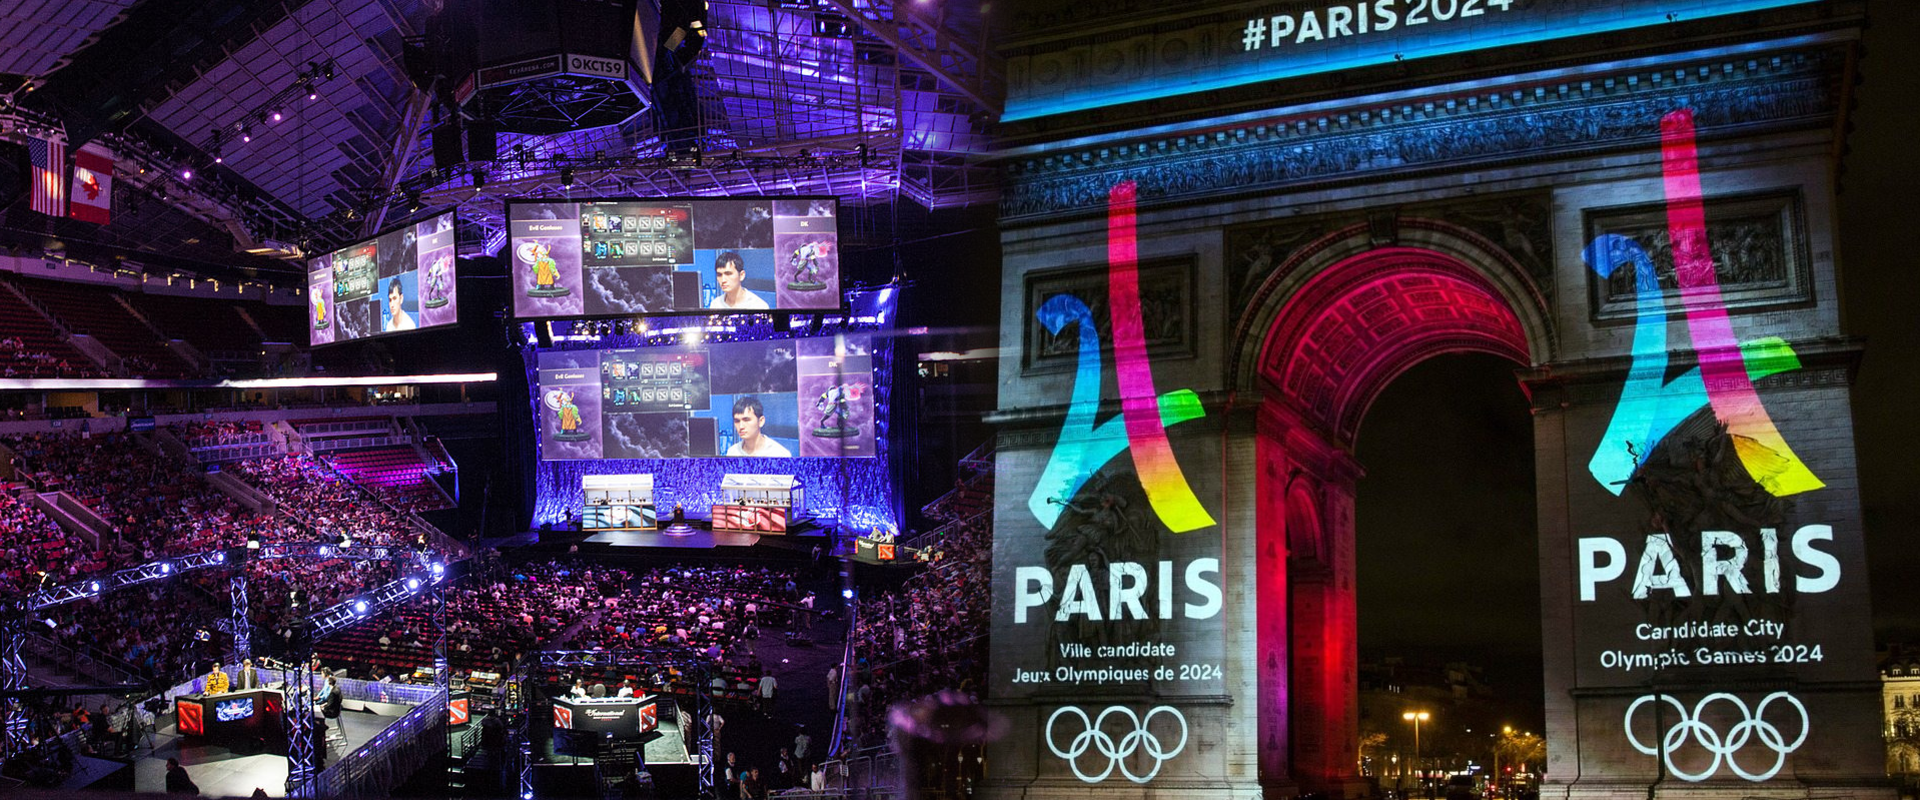 Előrehaladott tárgyalások folynak arról, hogy az e-sport is ott legyen a 2024-es párizsi olimpián